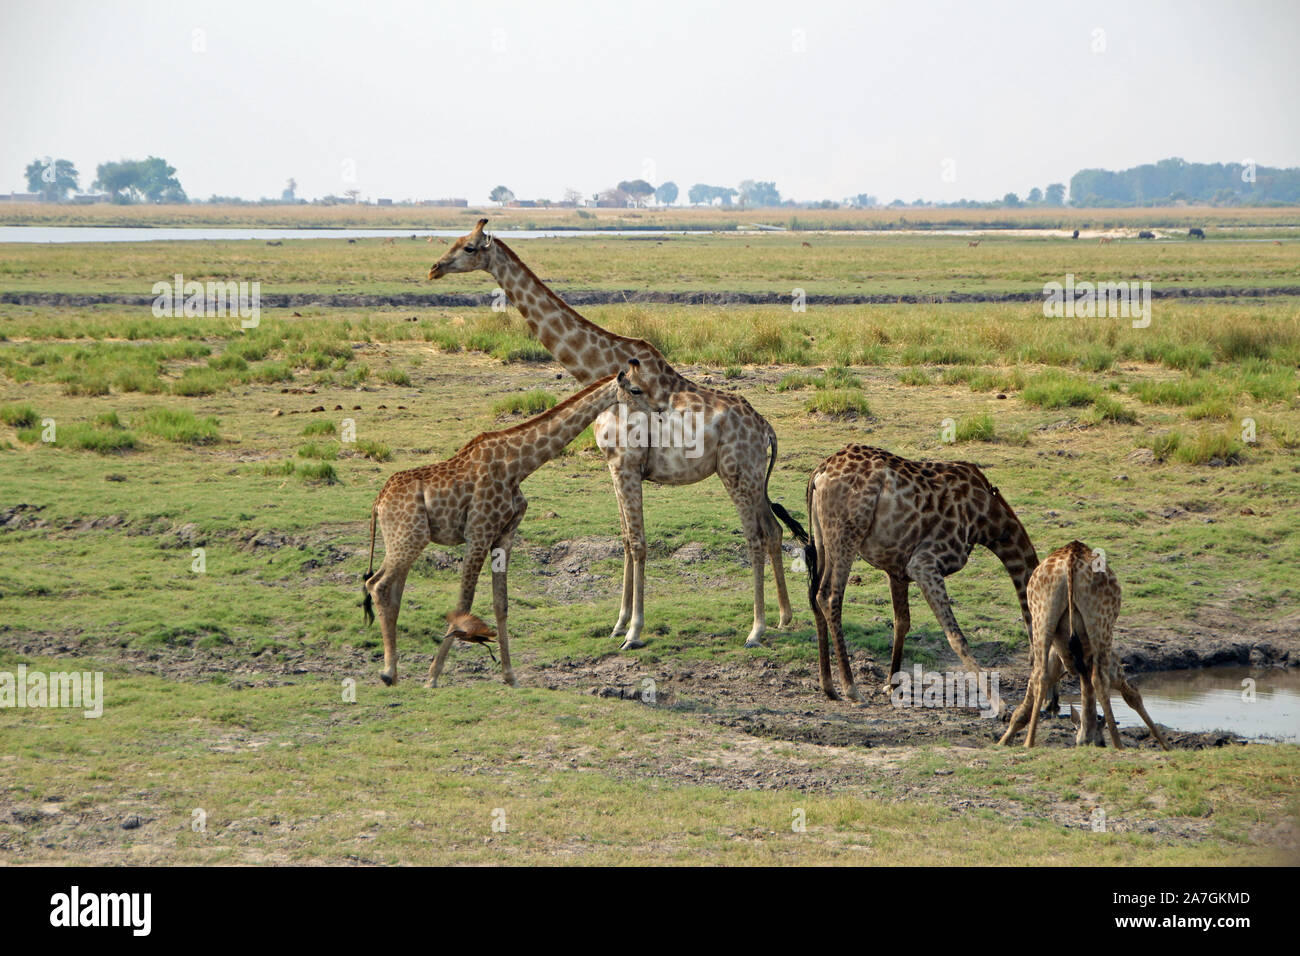 Giraffes at the waterhole in Botswana Chobe NP Stock Photo